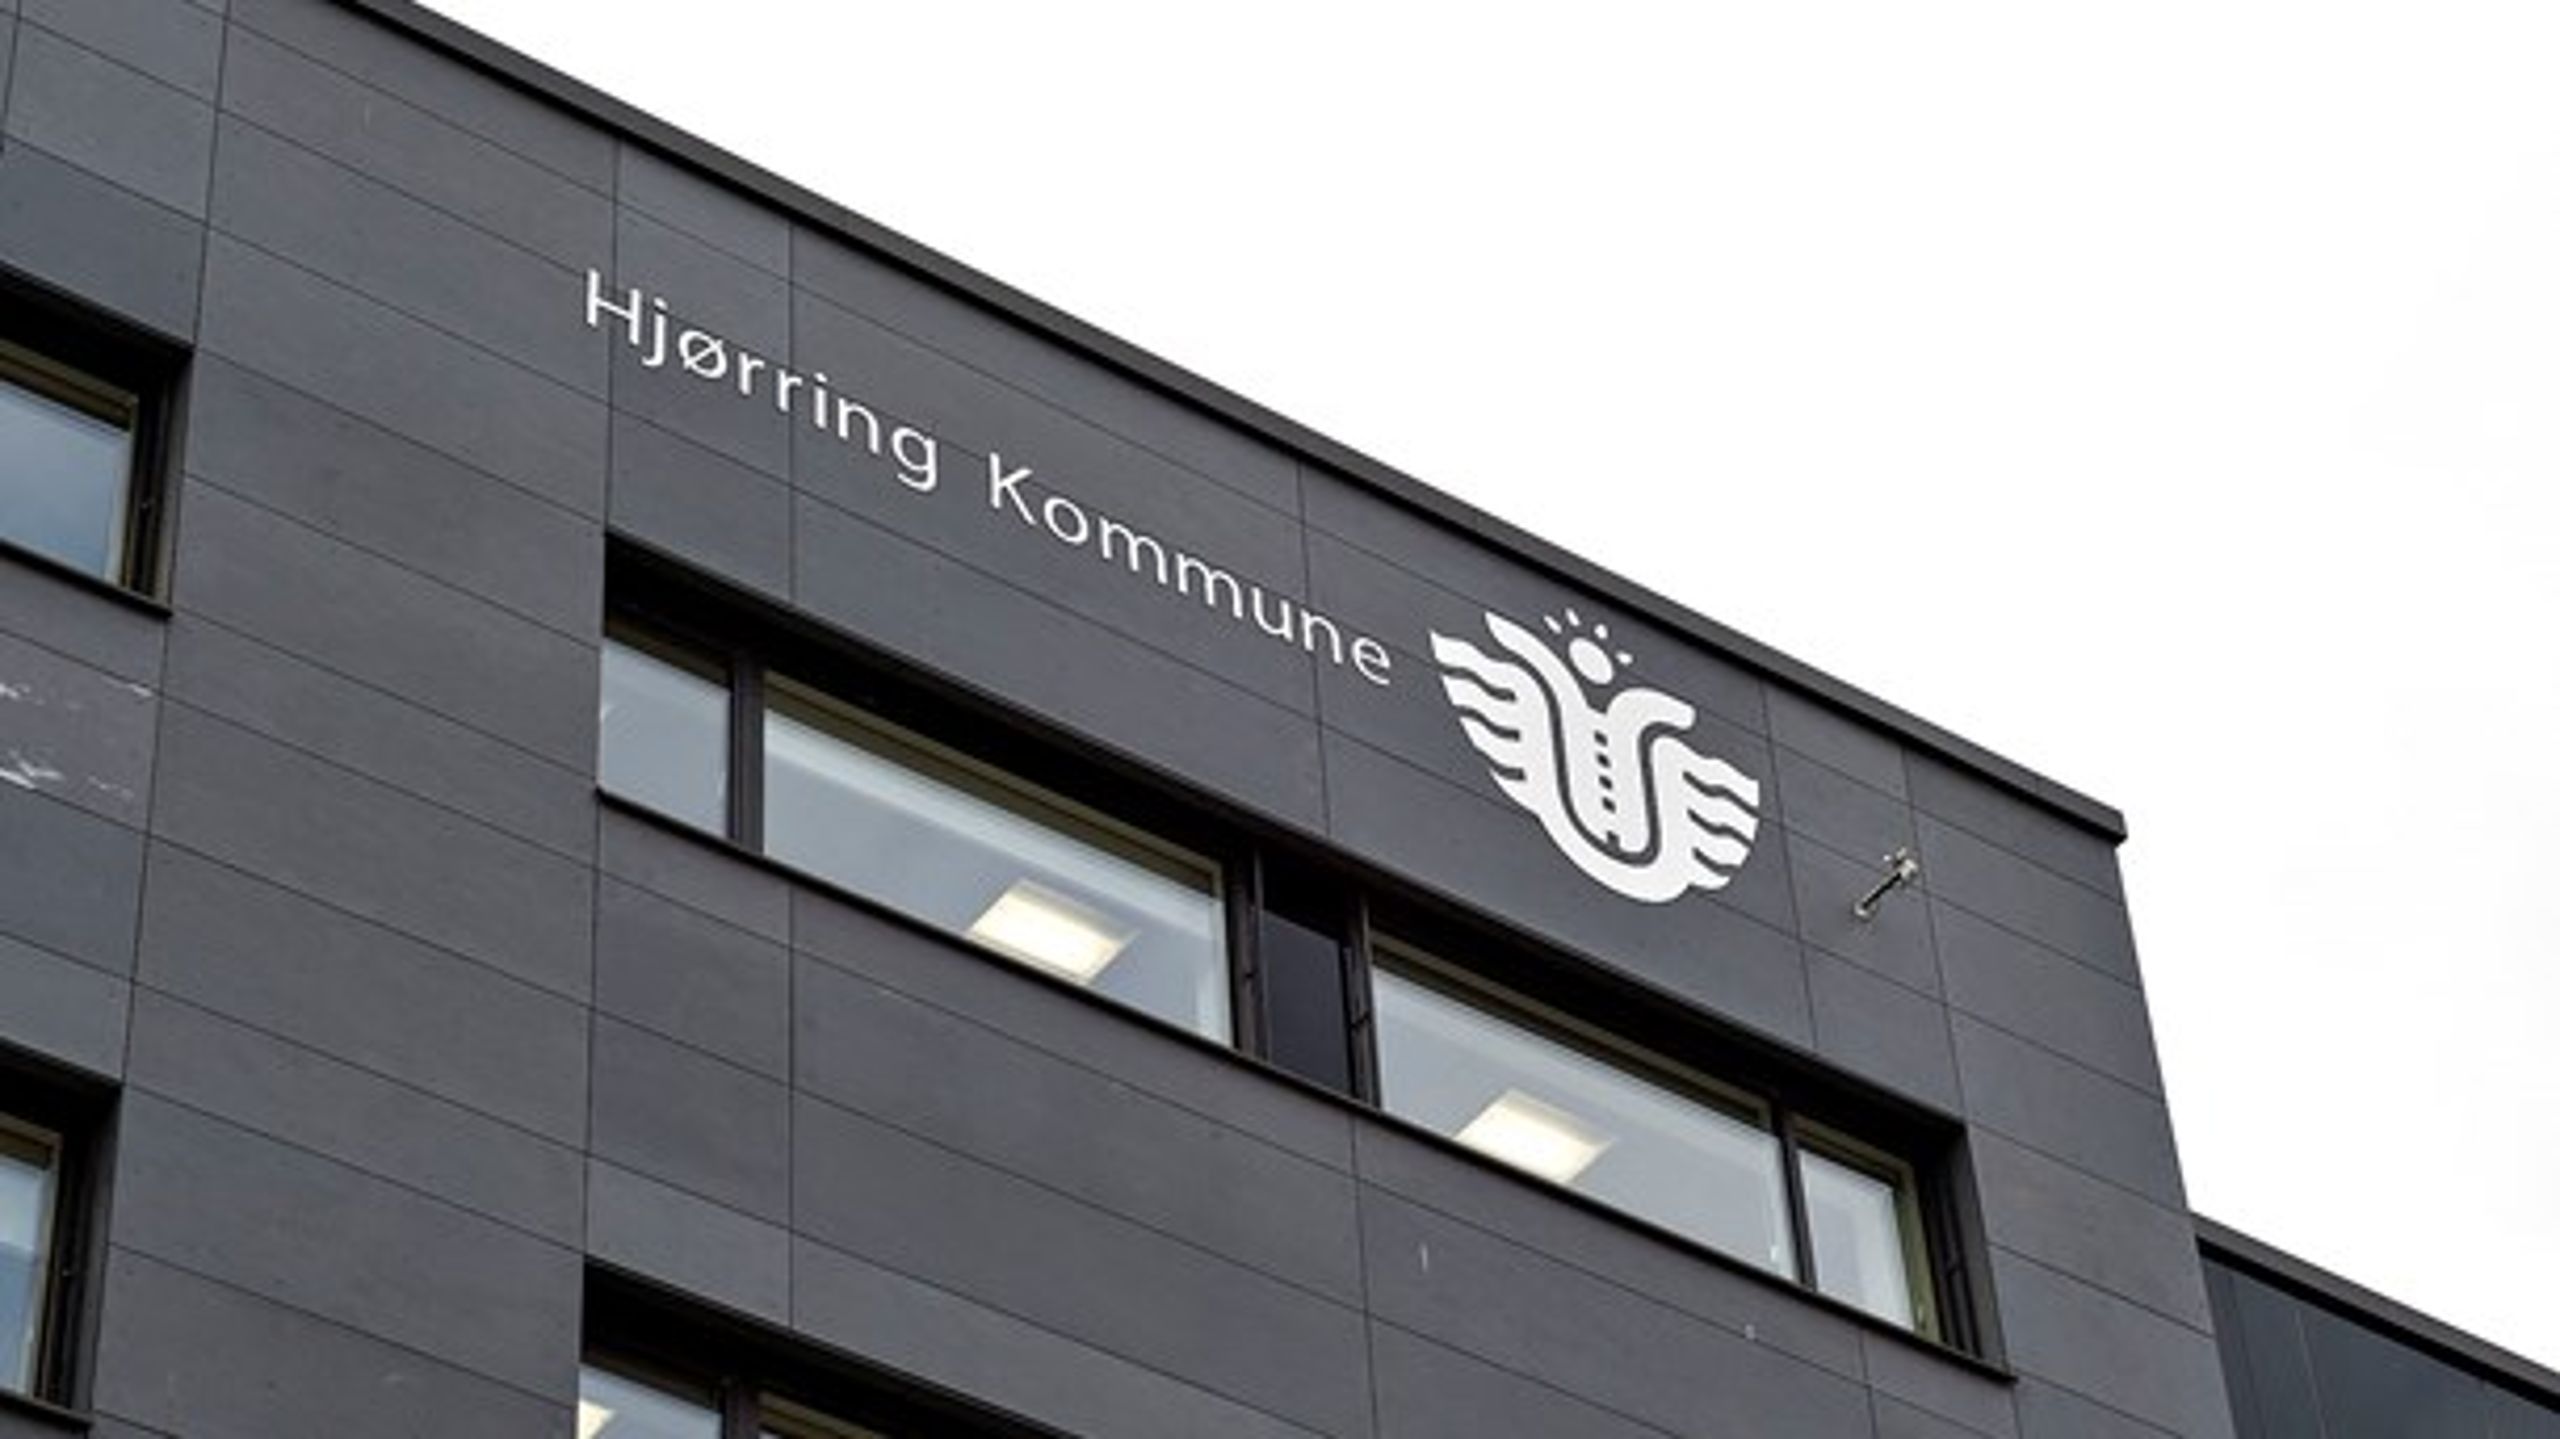 En af de kommuner, der mener, at de er blevet snydt for flere millioner kroner, er Hjørring Kommune.